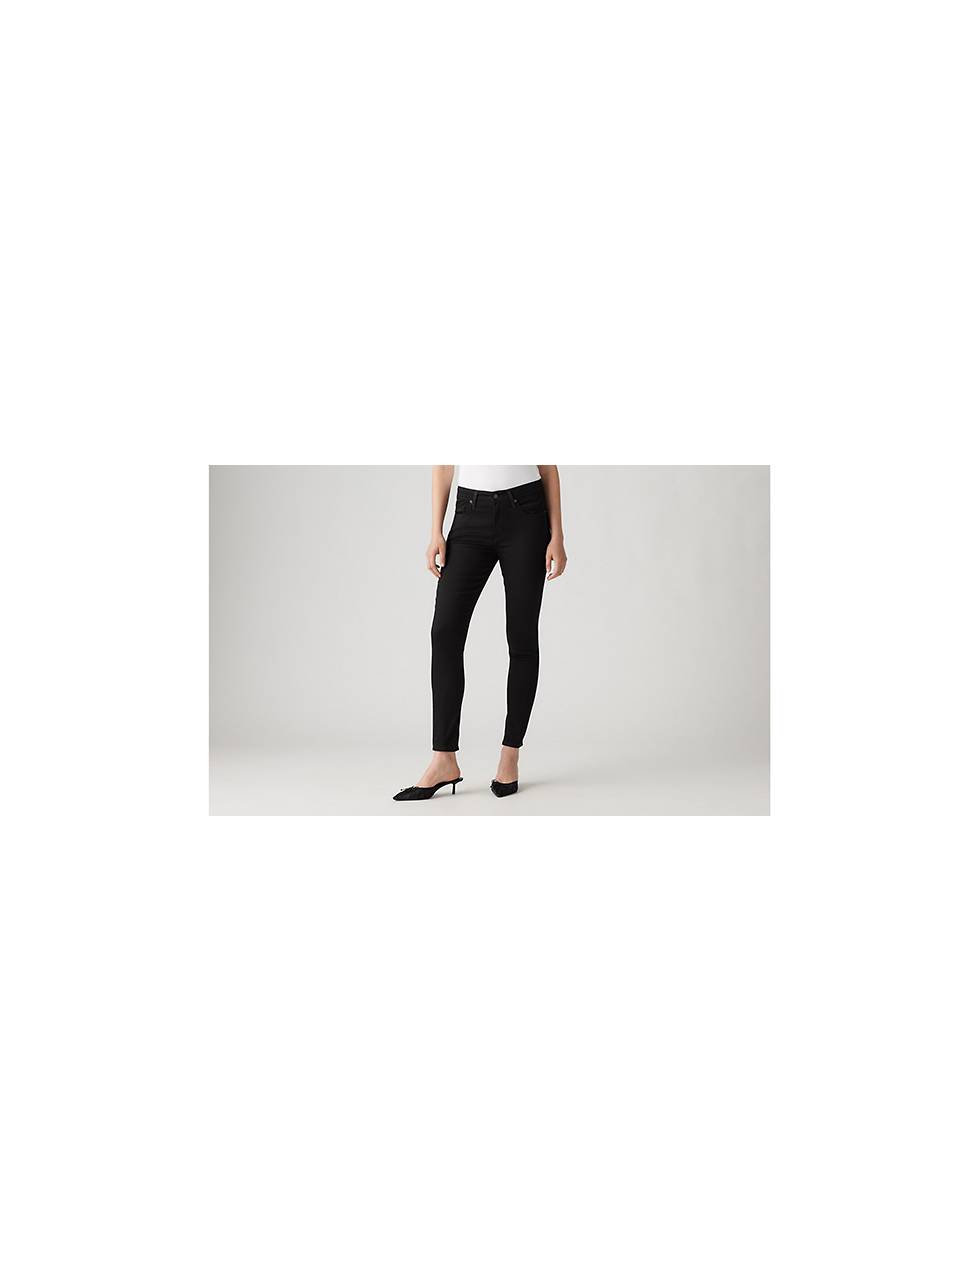 flexible Chicle pestaña Women's Black Jeans: Shop Black Denim Jeans for Women | Levi's® US